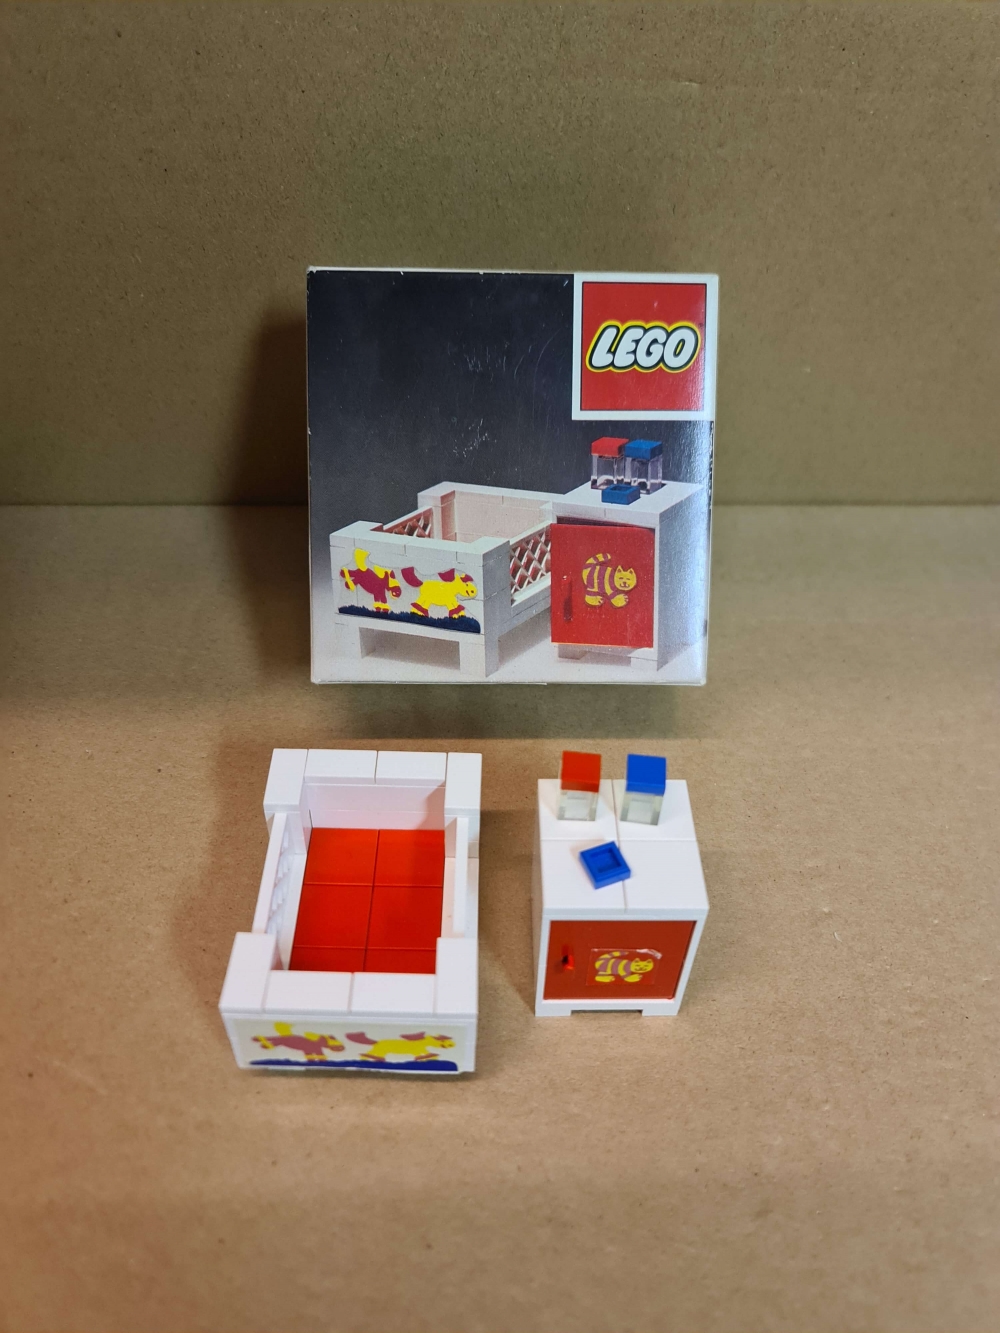 Sett 271 fra Lego Homemaker serien.

Nydelig sett. Ser nytt ut.
Kun originale deler fra settet.
Med eske, uten manual.